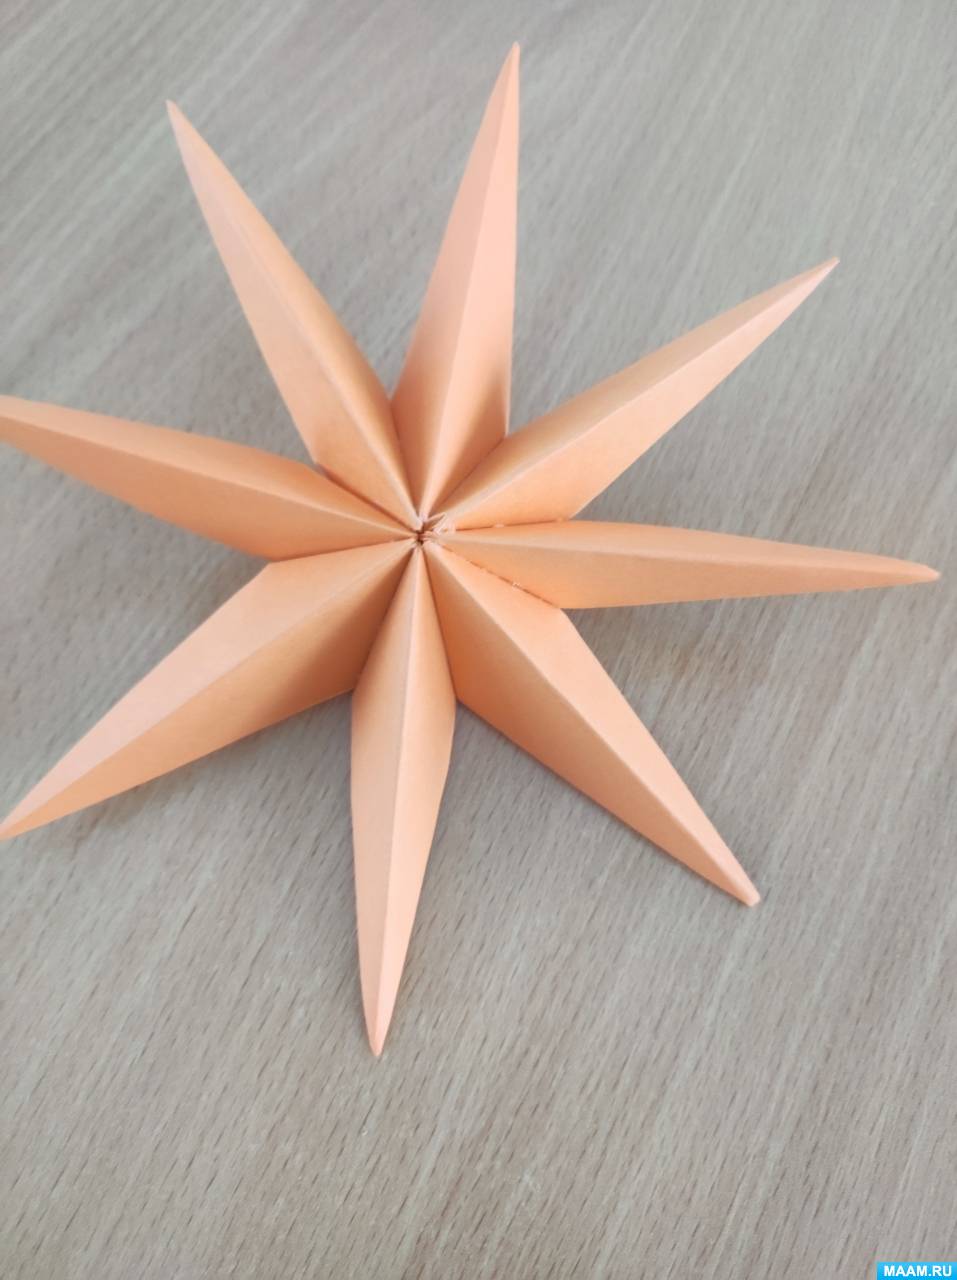 Оригами для начинающих: корона по традиционной схеме